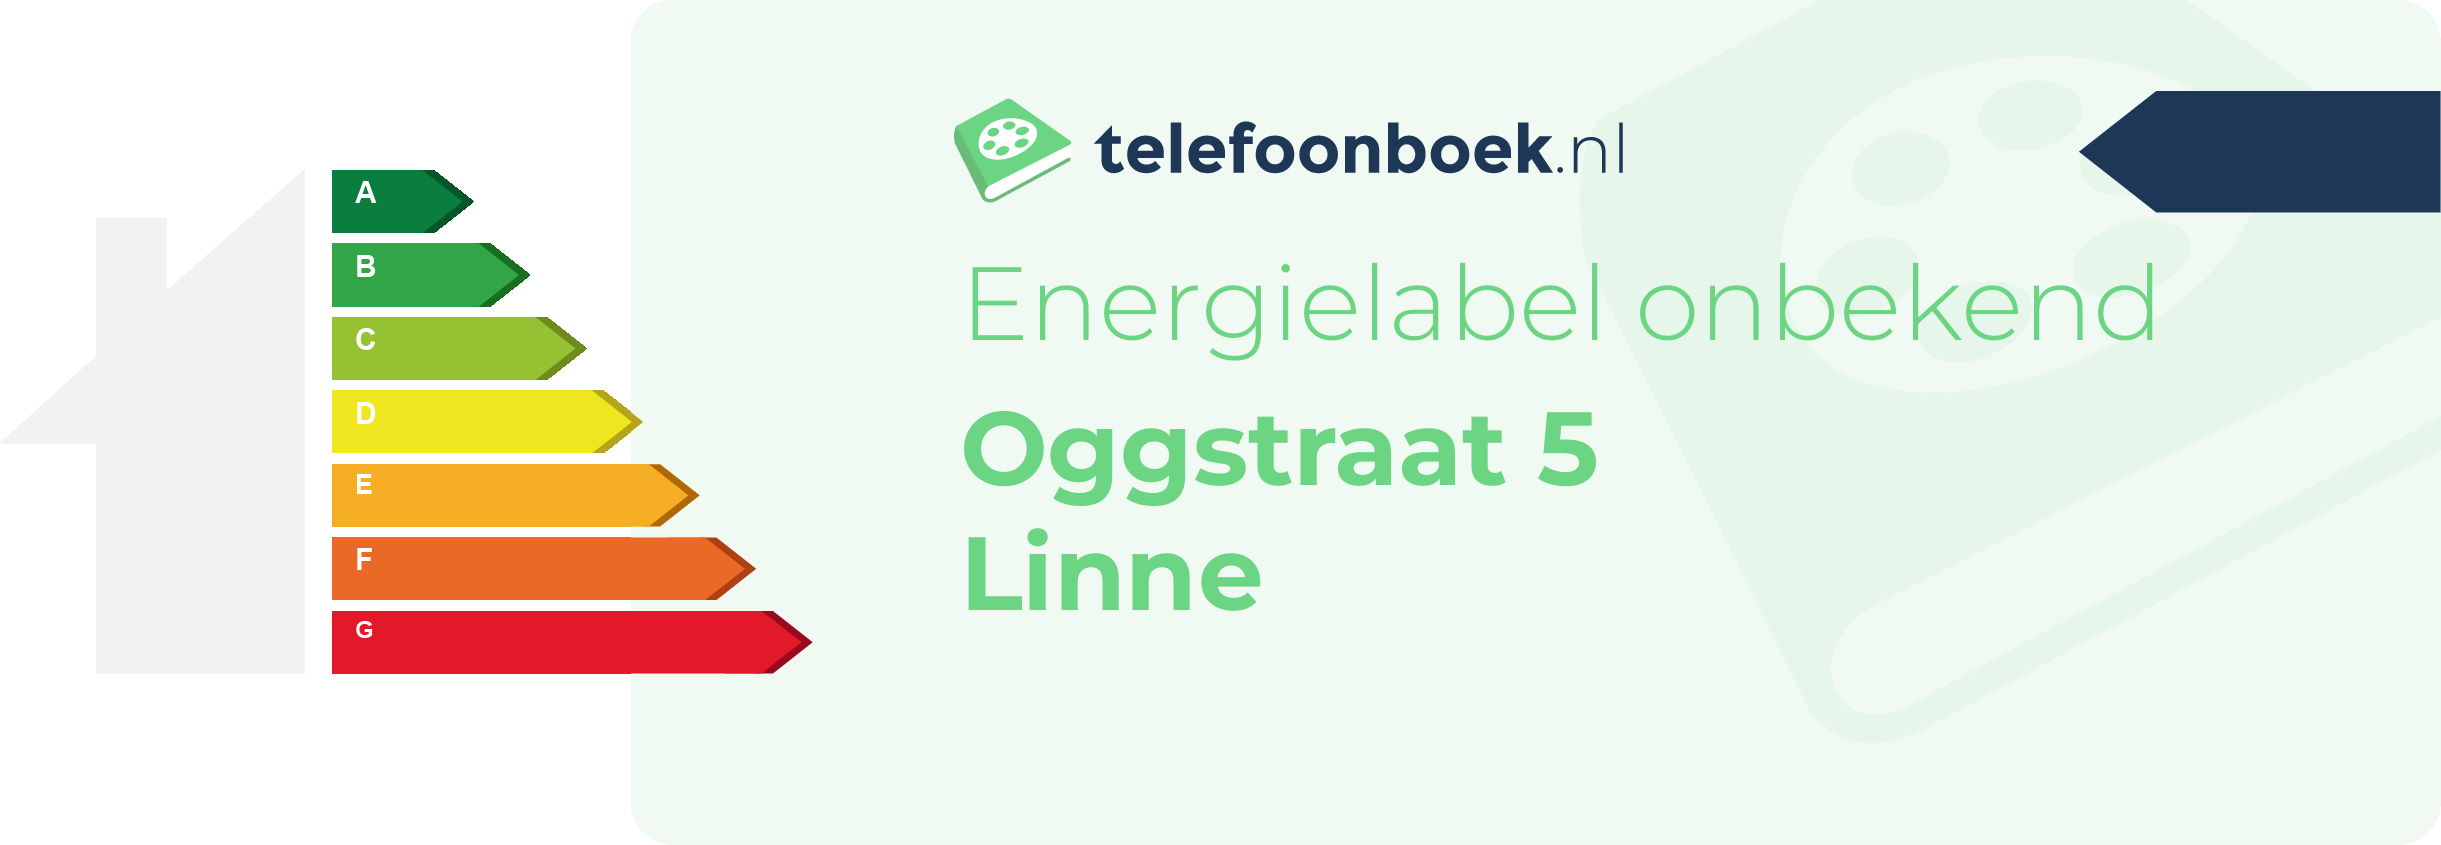 Energielabel Oggstraat 5 Linne